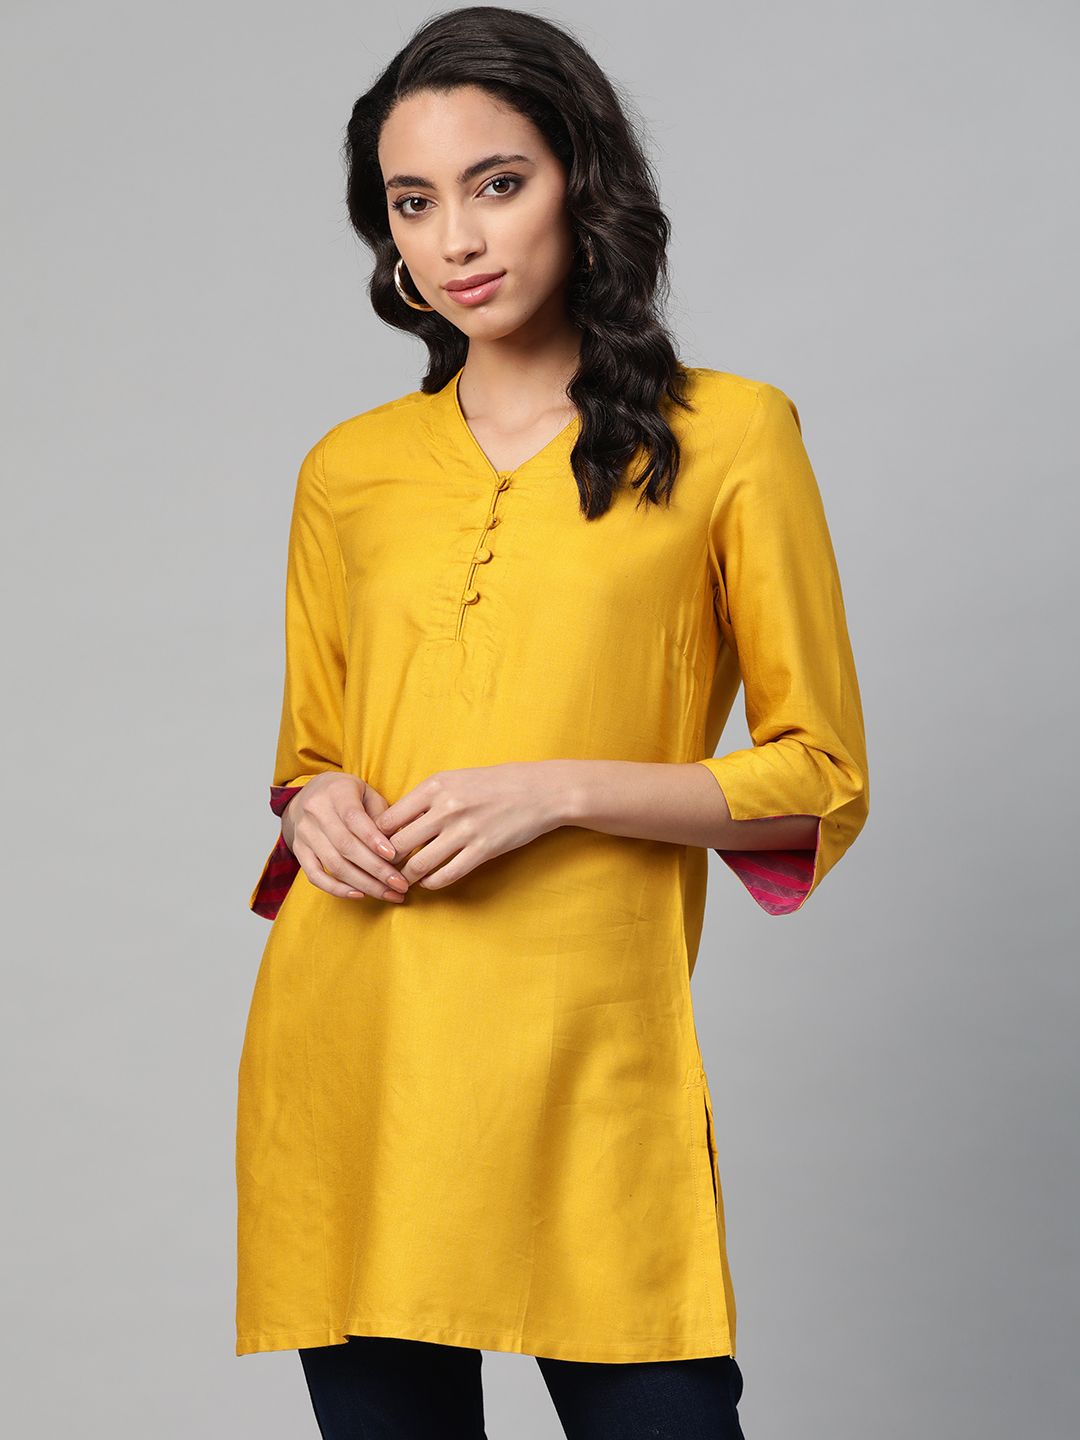 Fabindia Women Mustard Yellow Solid Tunic Price in India